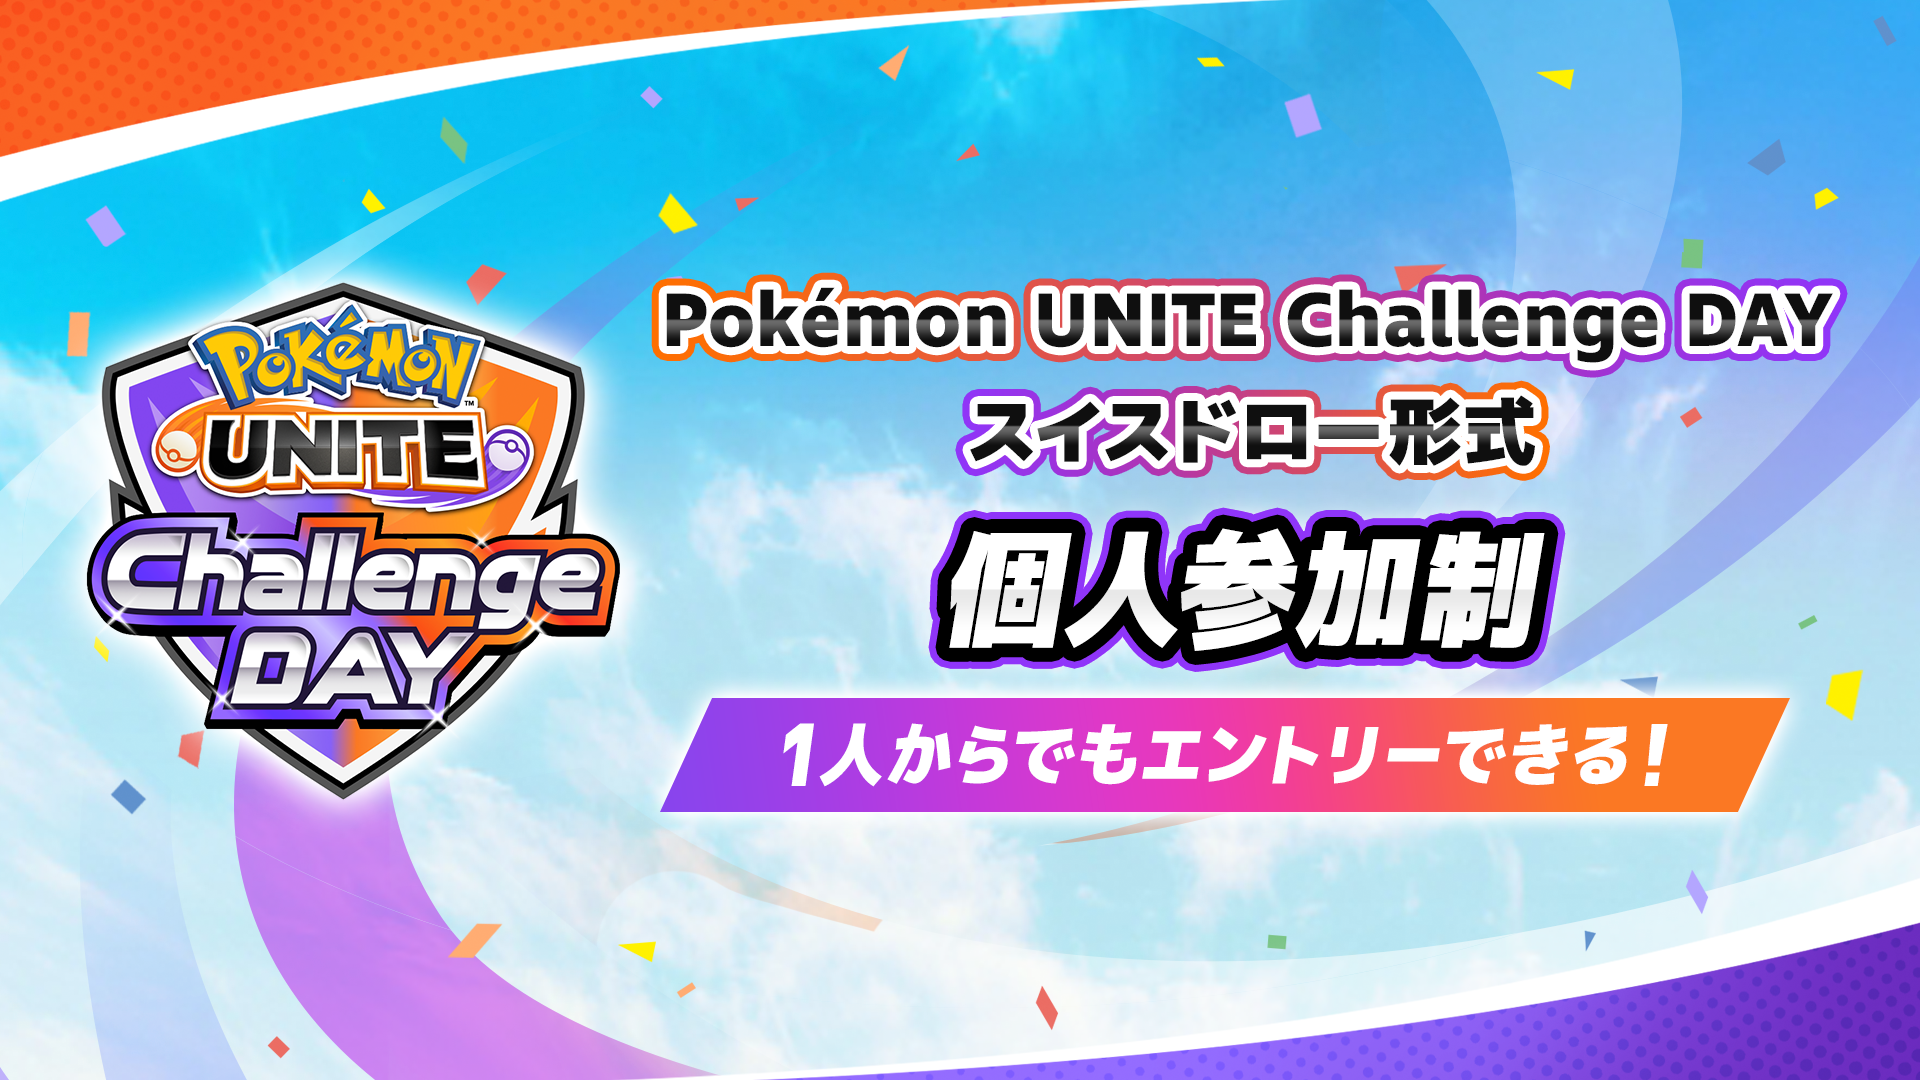 Pokemon UNITE Challenge DAY 1.21 個人参加制 スイスドロー形式 午前の部・午後の部 計3イベント開催！